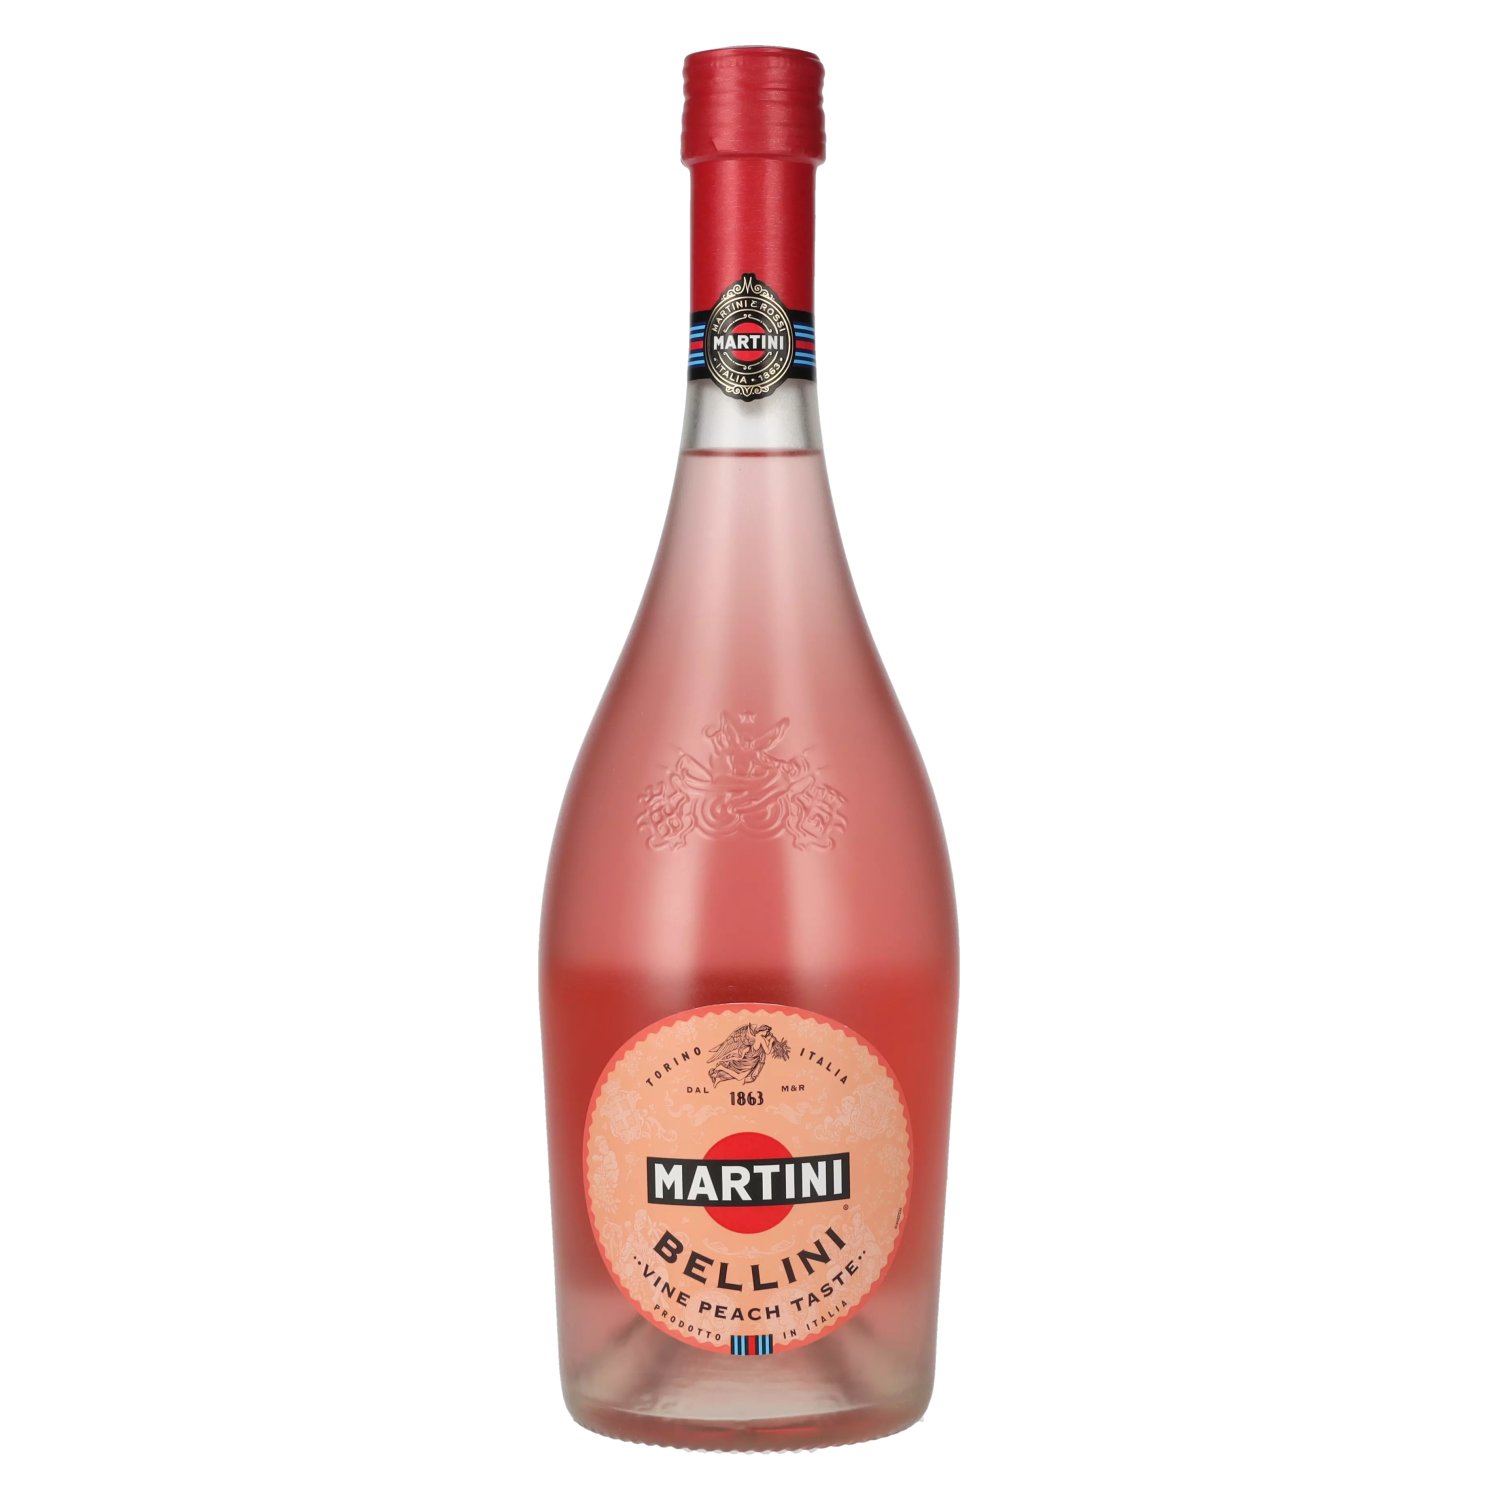 MARTINI® Brut, Rosé, Prosecco, Royale Bianco, Royale Rosato, Bellini Vine  Peach.